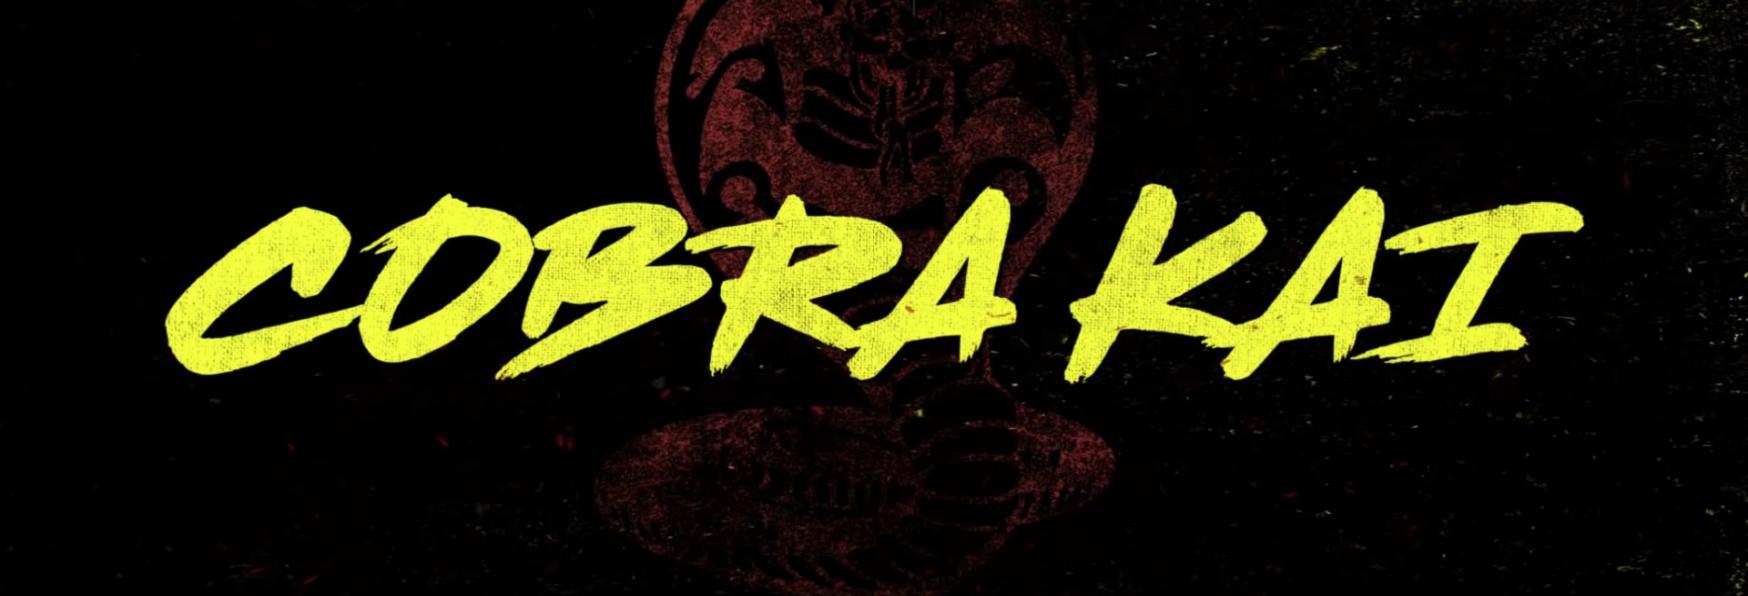 Cobra Kai 4: la recente Stagione della Serie TV Netflix è più Vista di The Witcher e Hawkeye!